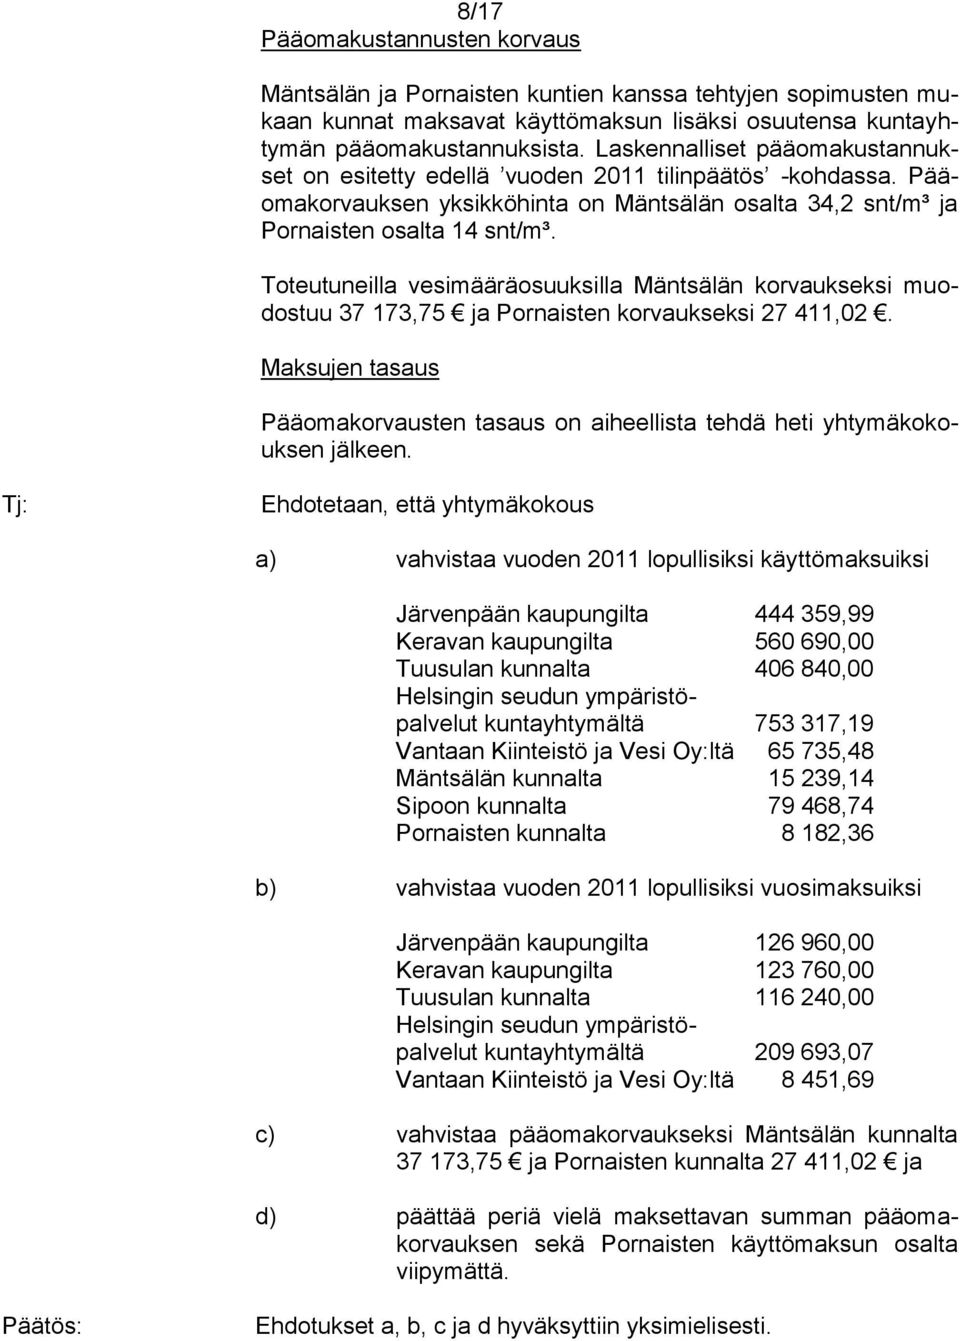 Toteutuneilla vesimääräosuuksilla Mäntsälän korvaukseksi muodostuu 37 173,75 ja Pornaisten korvaukseksi 27 411,02.